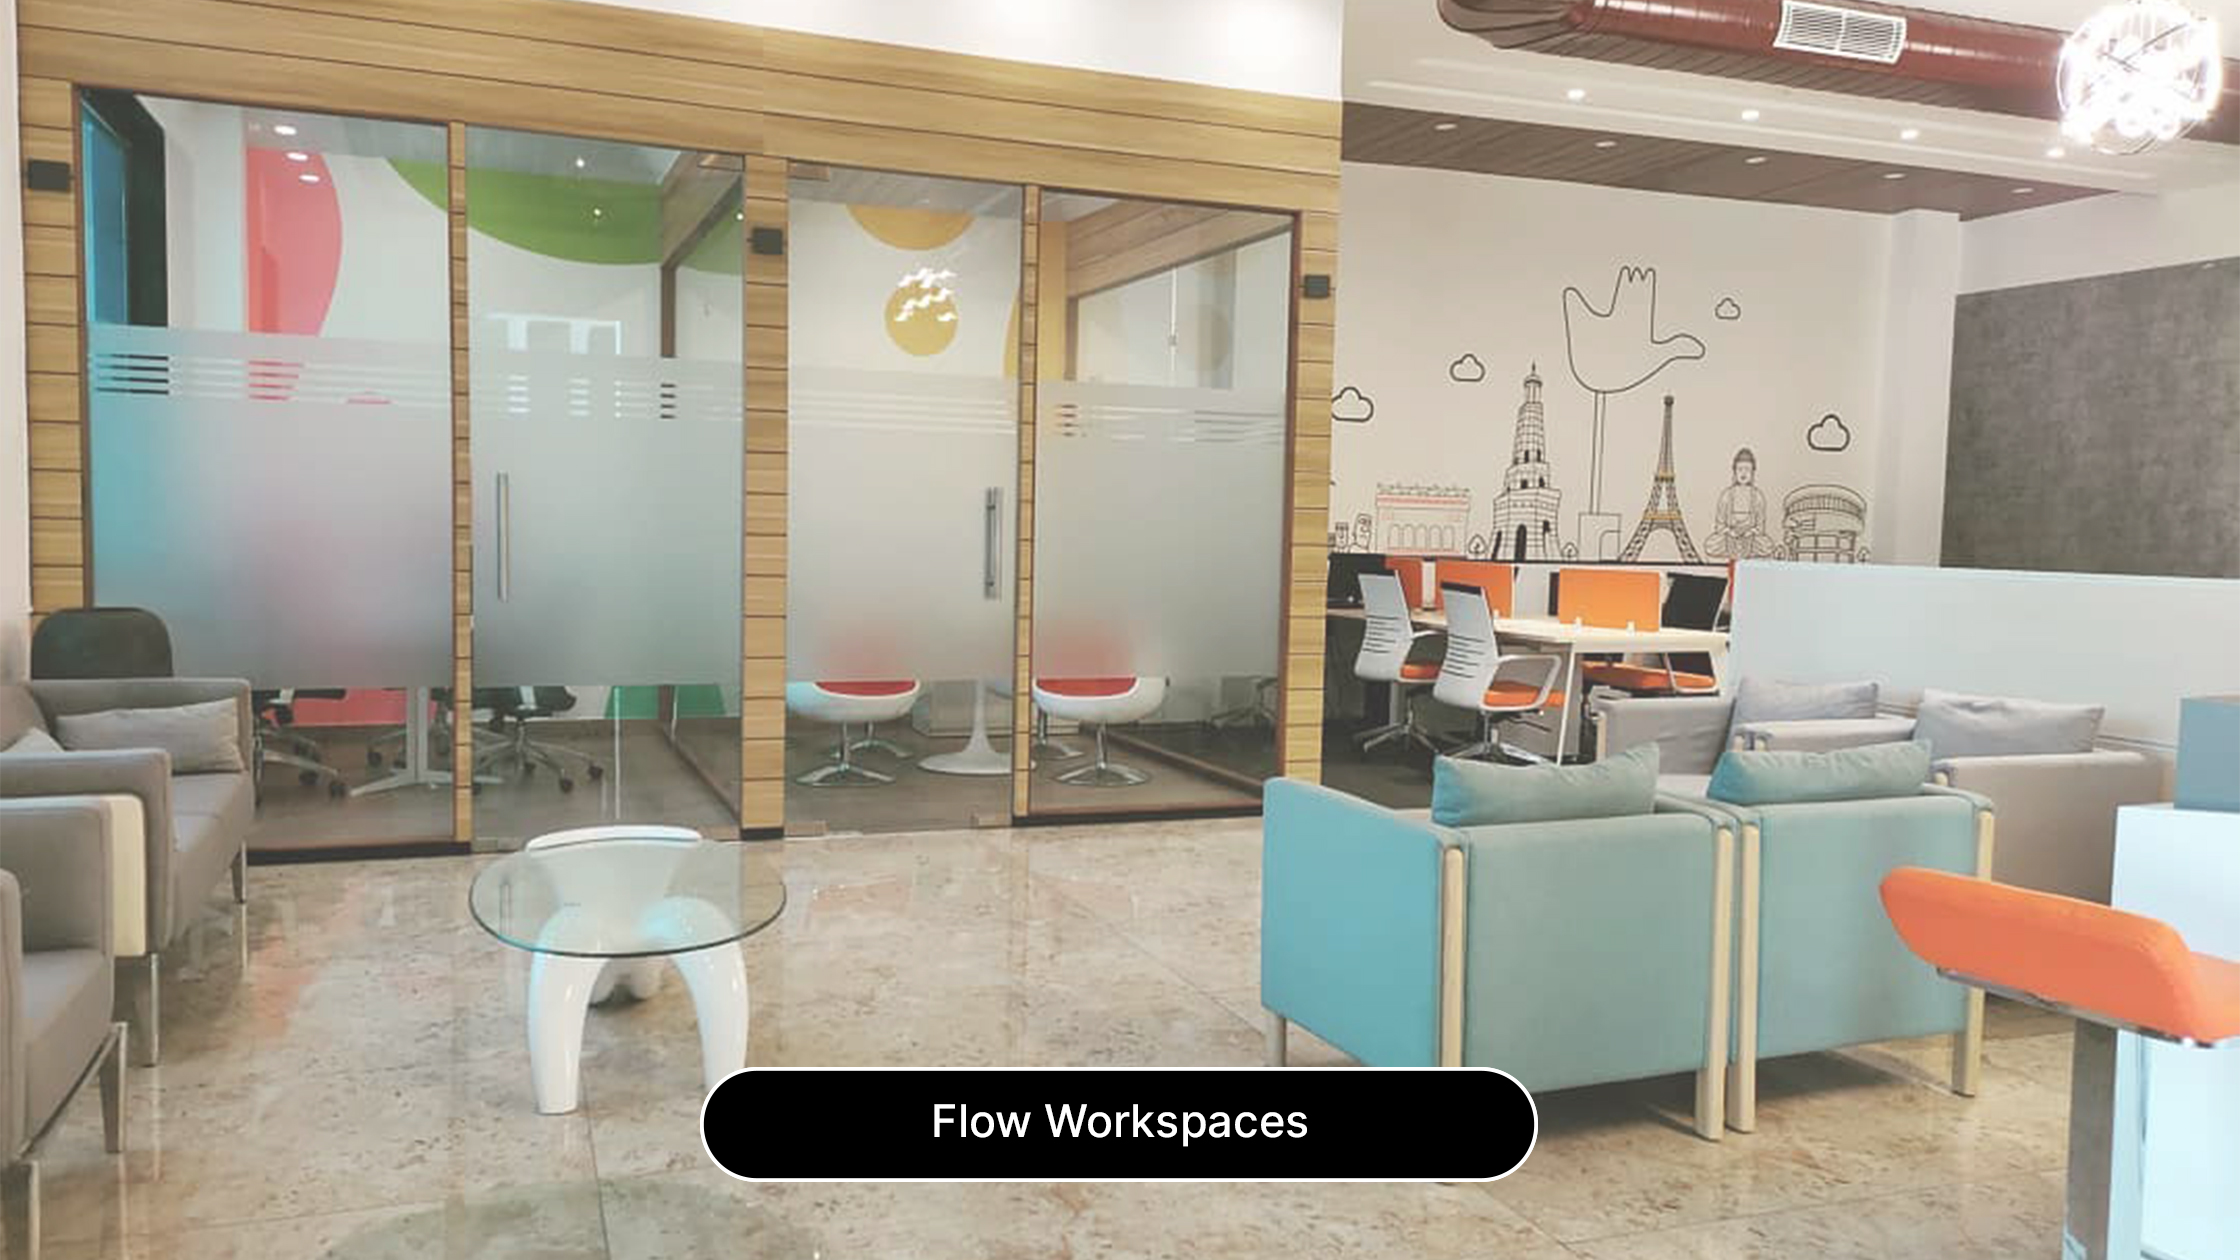 Flow Workspaces